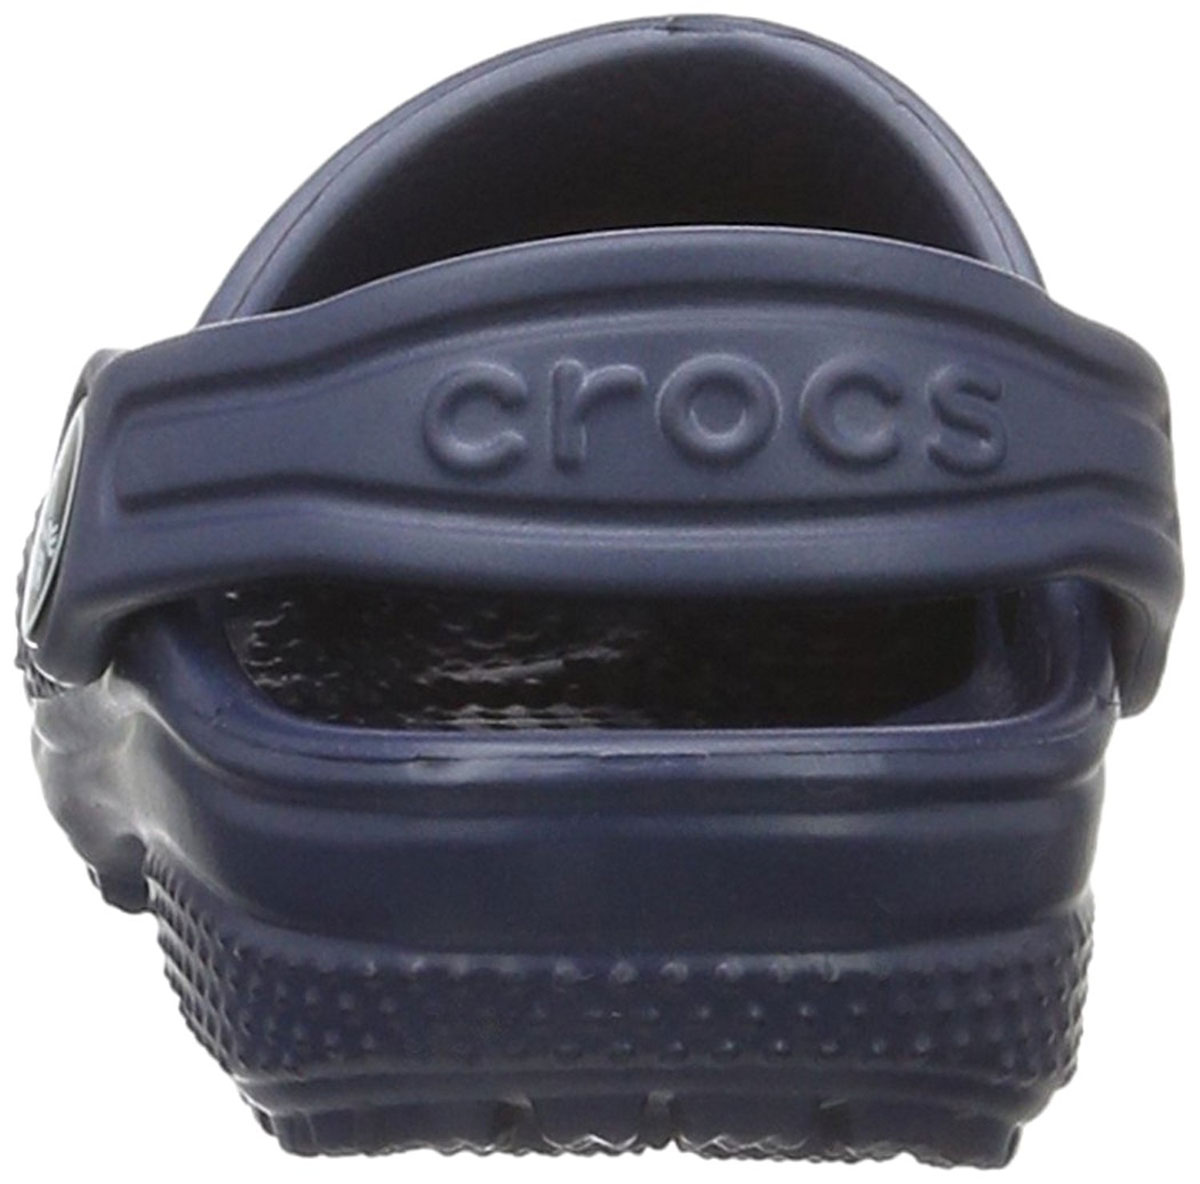 Crocs Classic Clog 